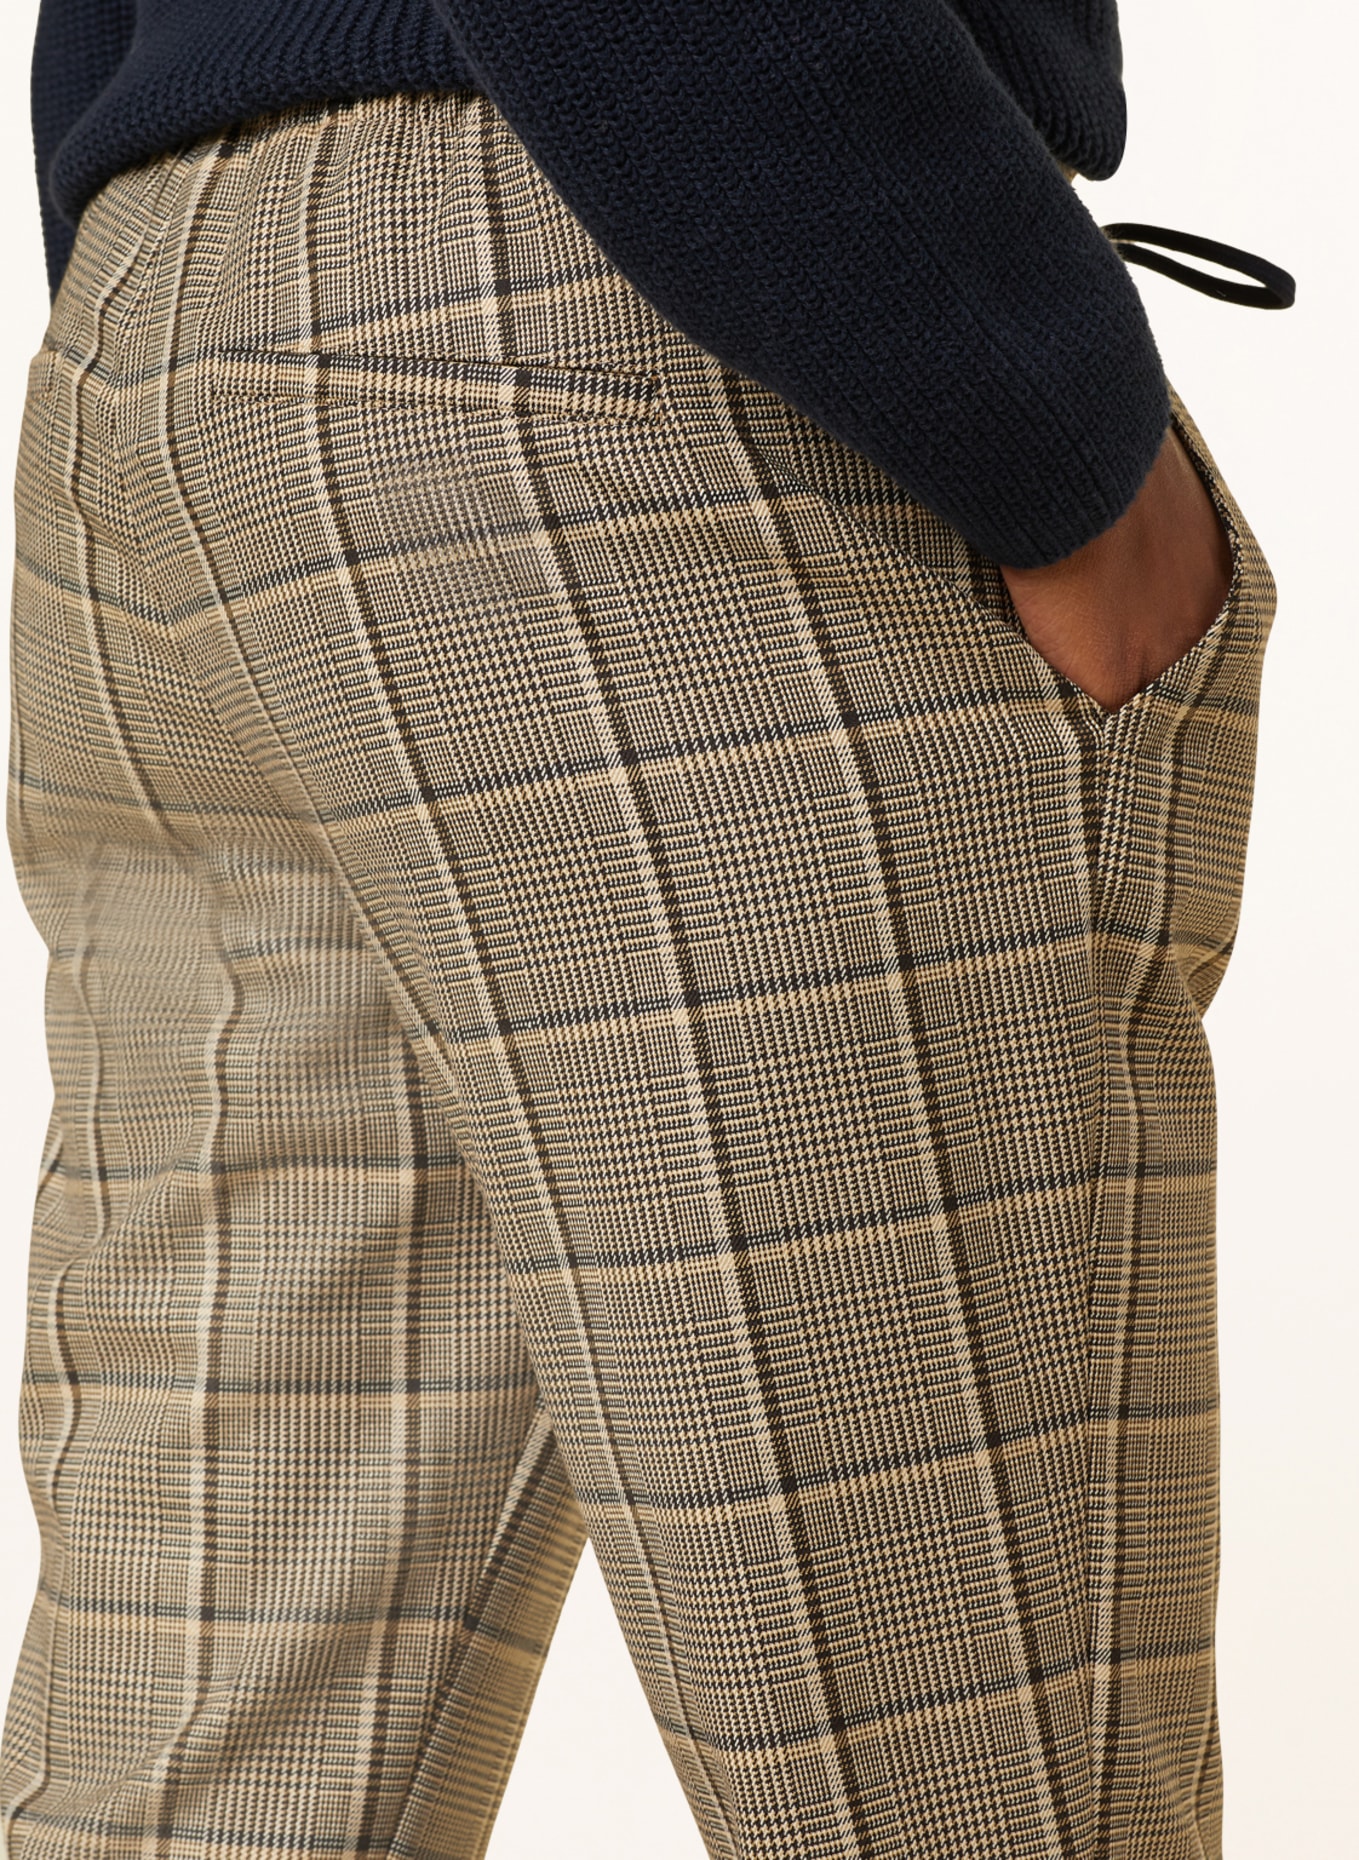 CINQUE Pants CISOFA in jogger style, Color: DARK BROWN/ BEIGE (Image 5)